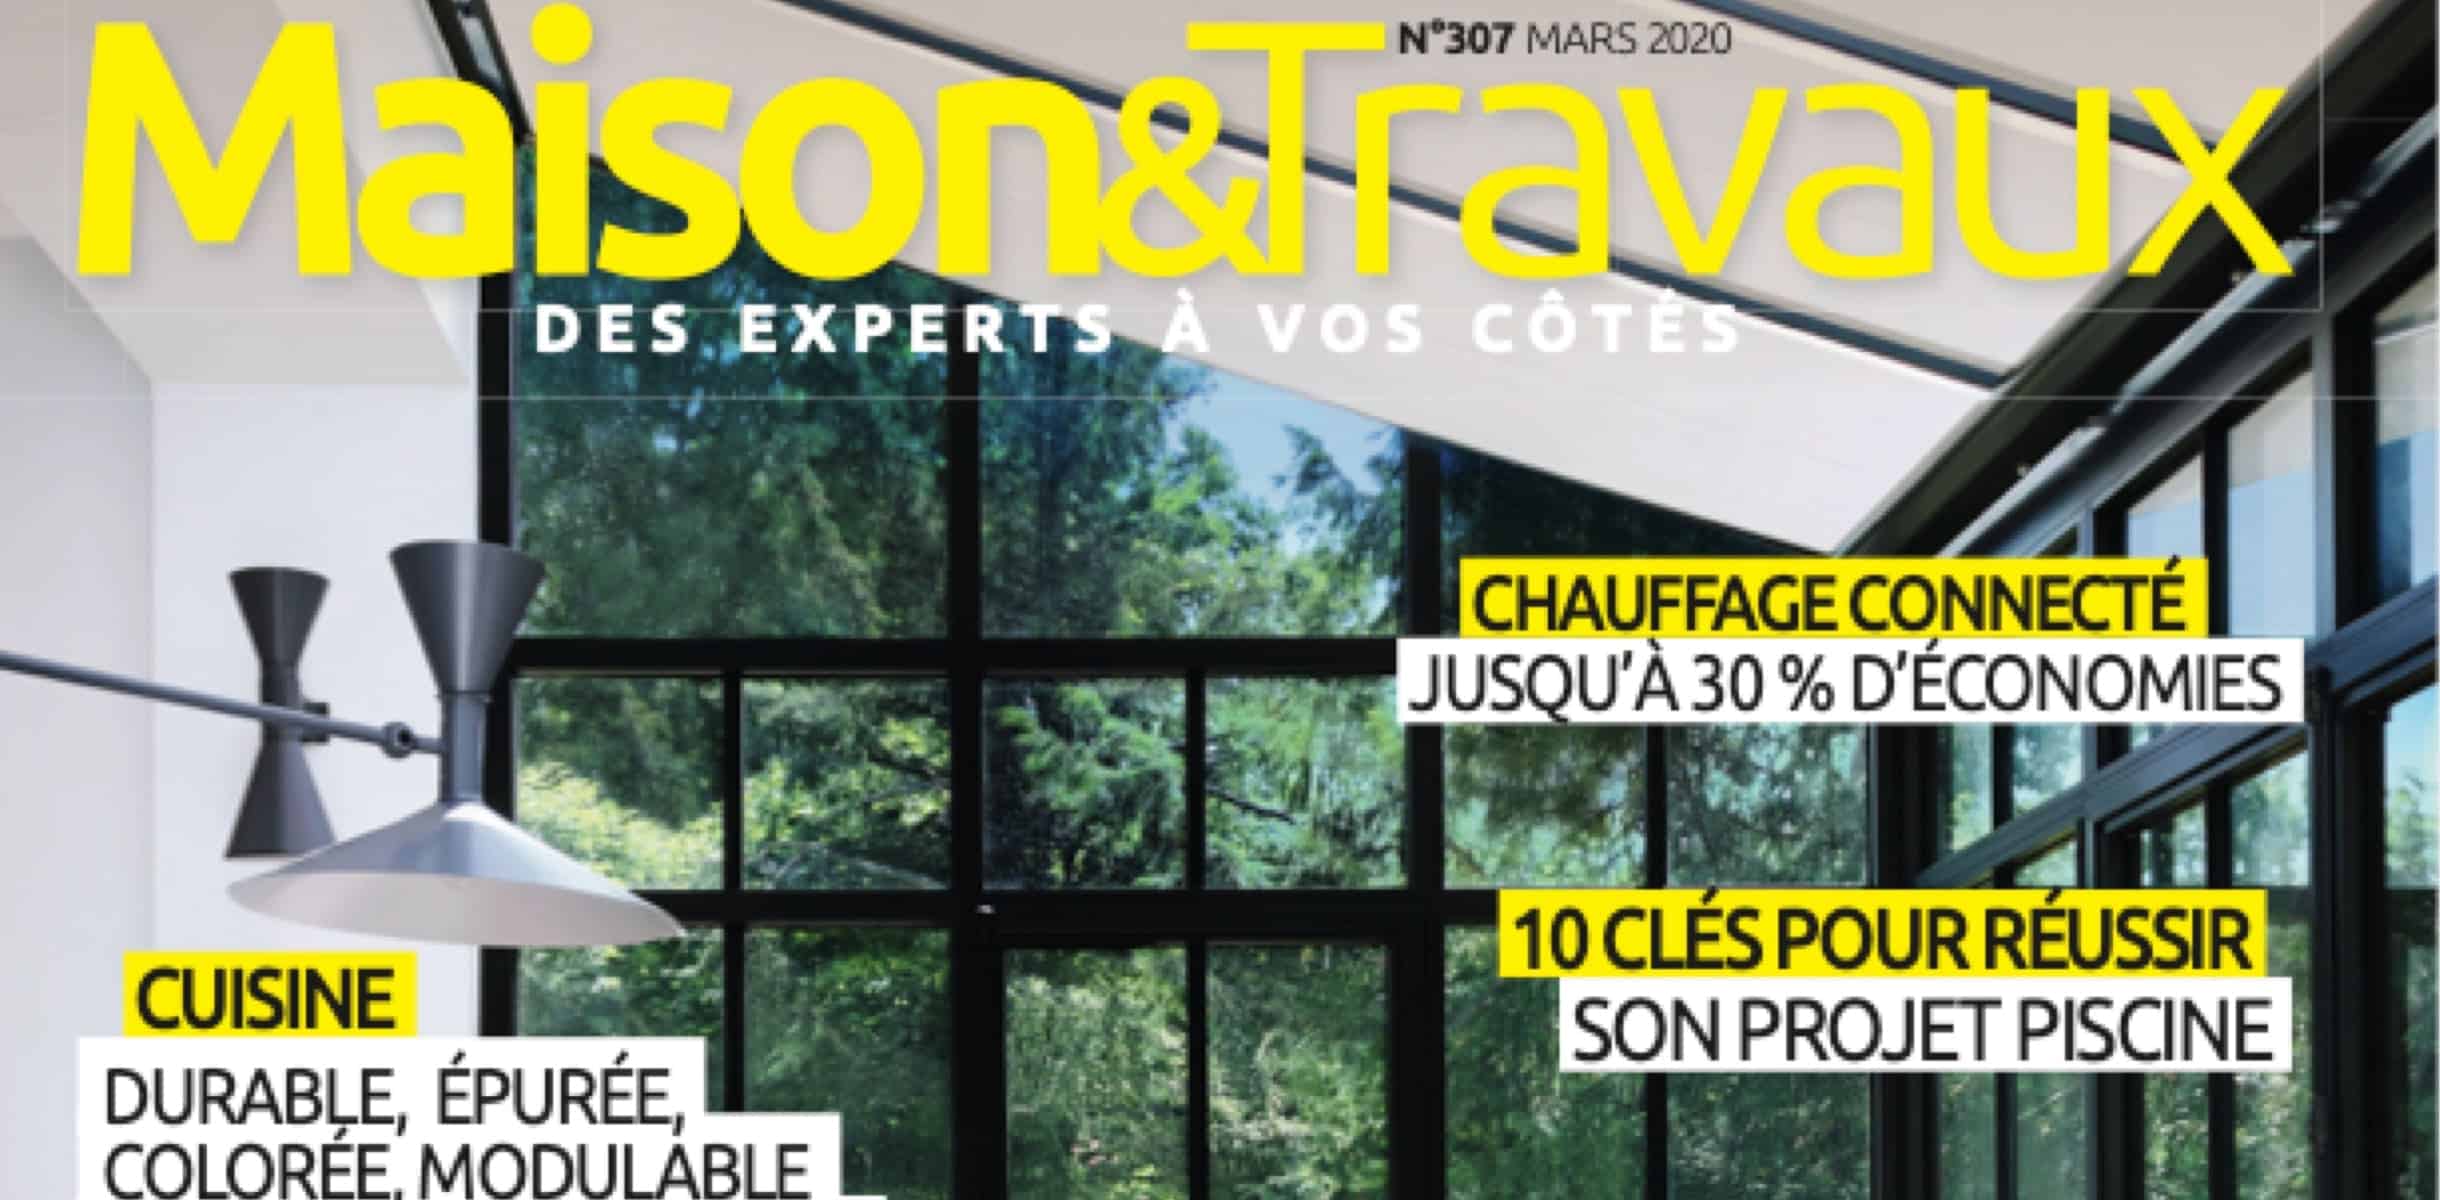 Find Noirdebois on newsstands in No. 307 of Maison & Travaux magazine